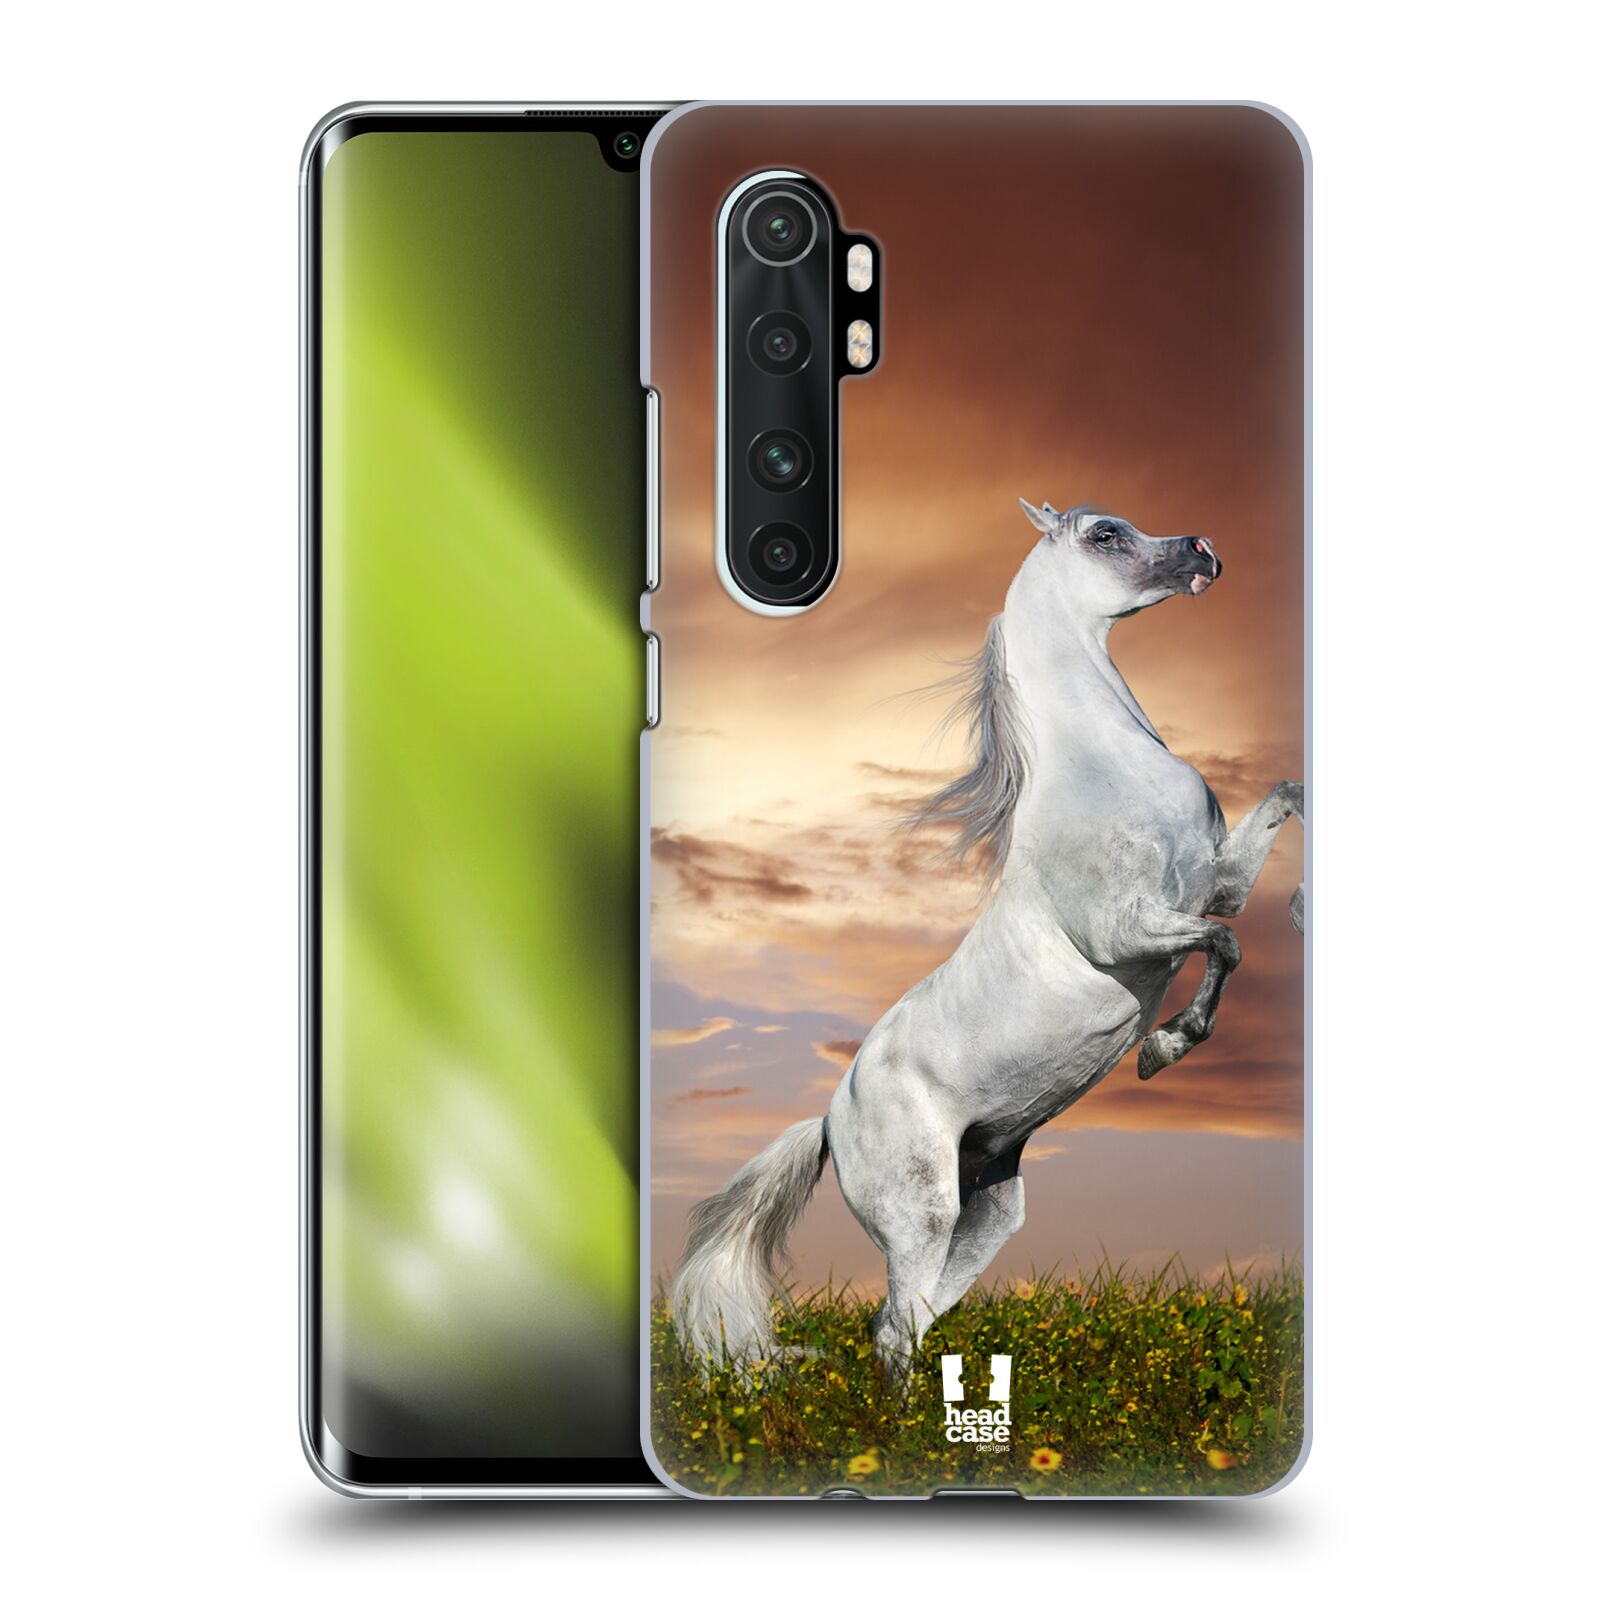 Zadní obal pro mobil Xiaomi Mi Note 10 LITE - HEAD CASE - Svět zvířat divoký kůň